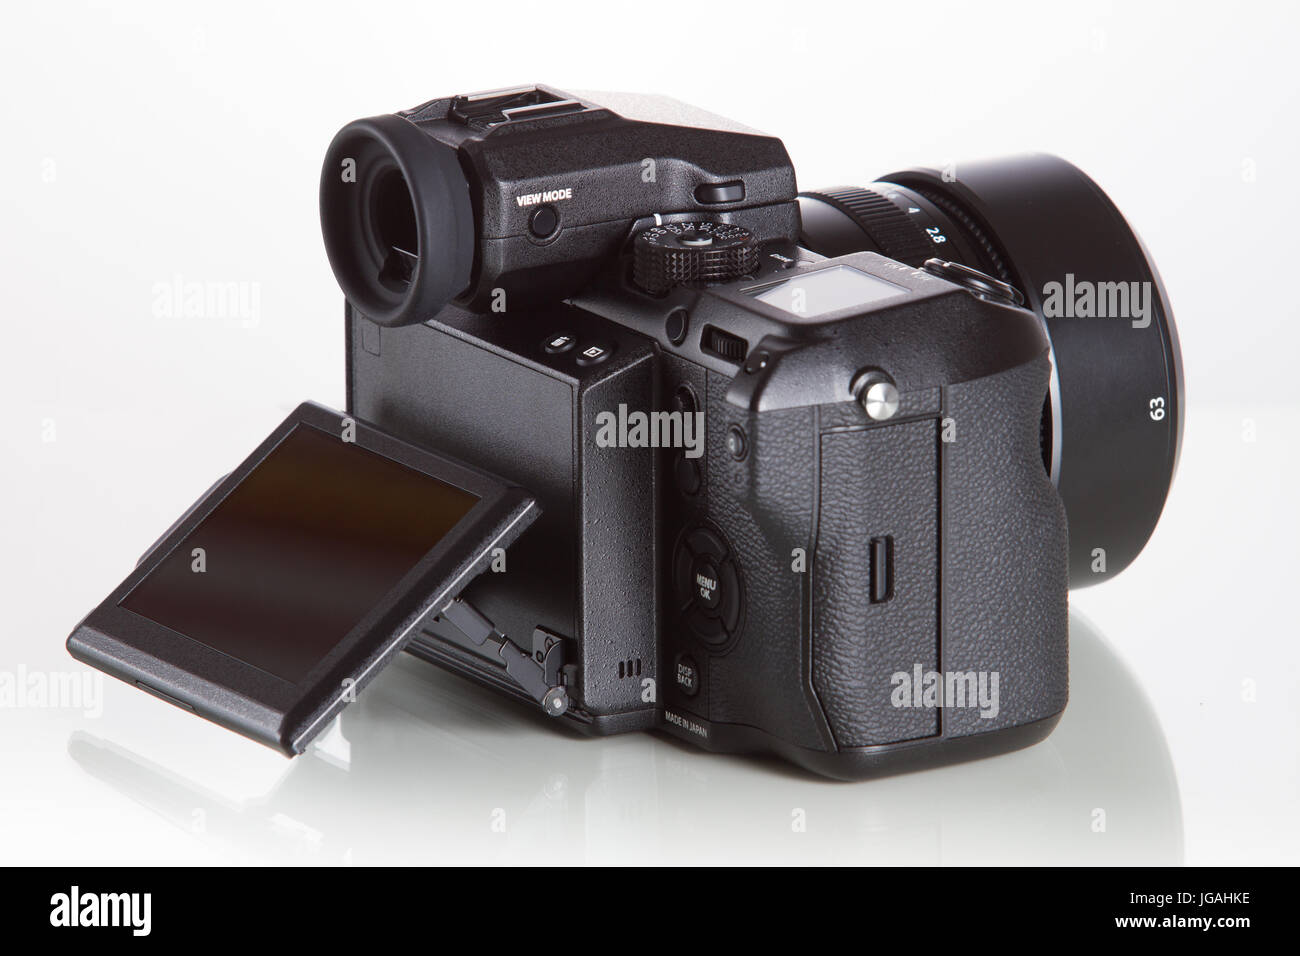 Fujifilm GFX 50S là một trong những chiếc máy ảnh cao cấp nhất trên thị trường hiện nay. Các hình ảnh chụp từ máy ảnh này có độ phân giải cực cao và chất lượng hình ảnh tuyệt vời. Nếu bạn đam mê nhiếp ảnh hoặc công nghệ, hãy xem ngay các hình ảnh liên quan đến Fujifilm GFX 50S.